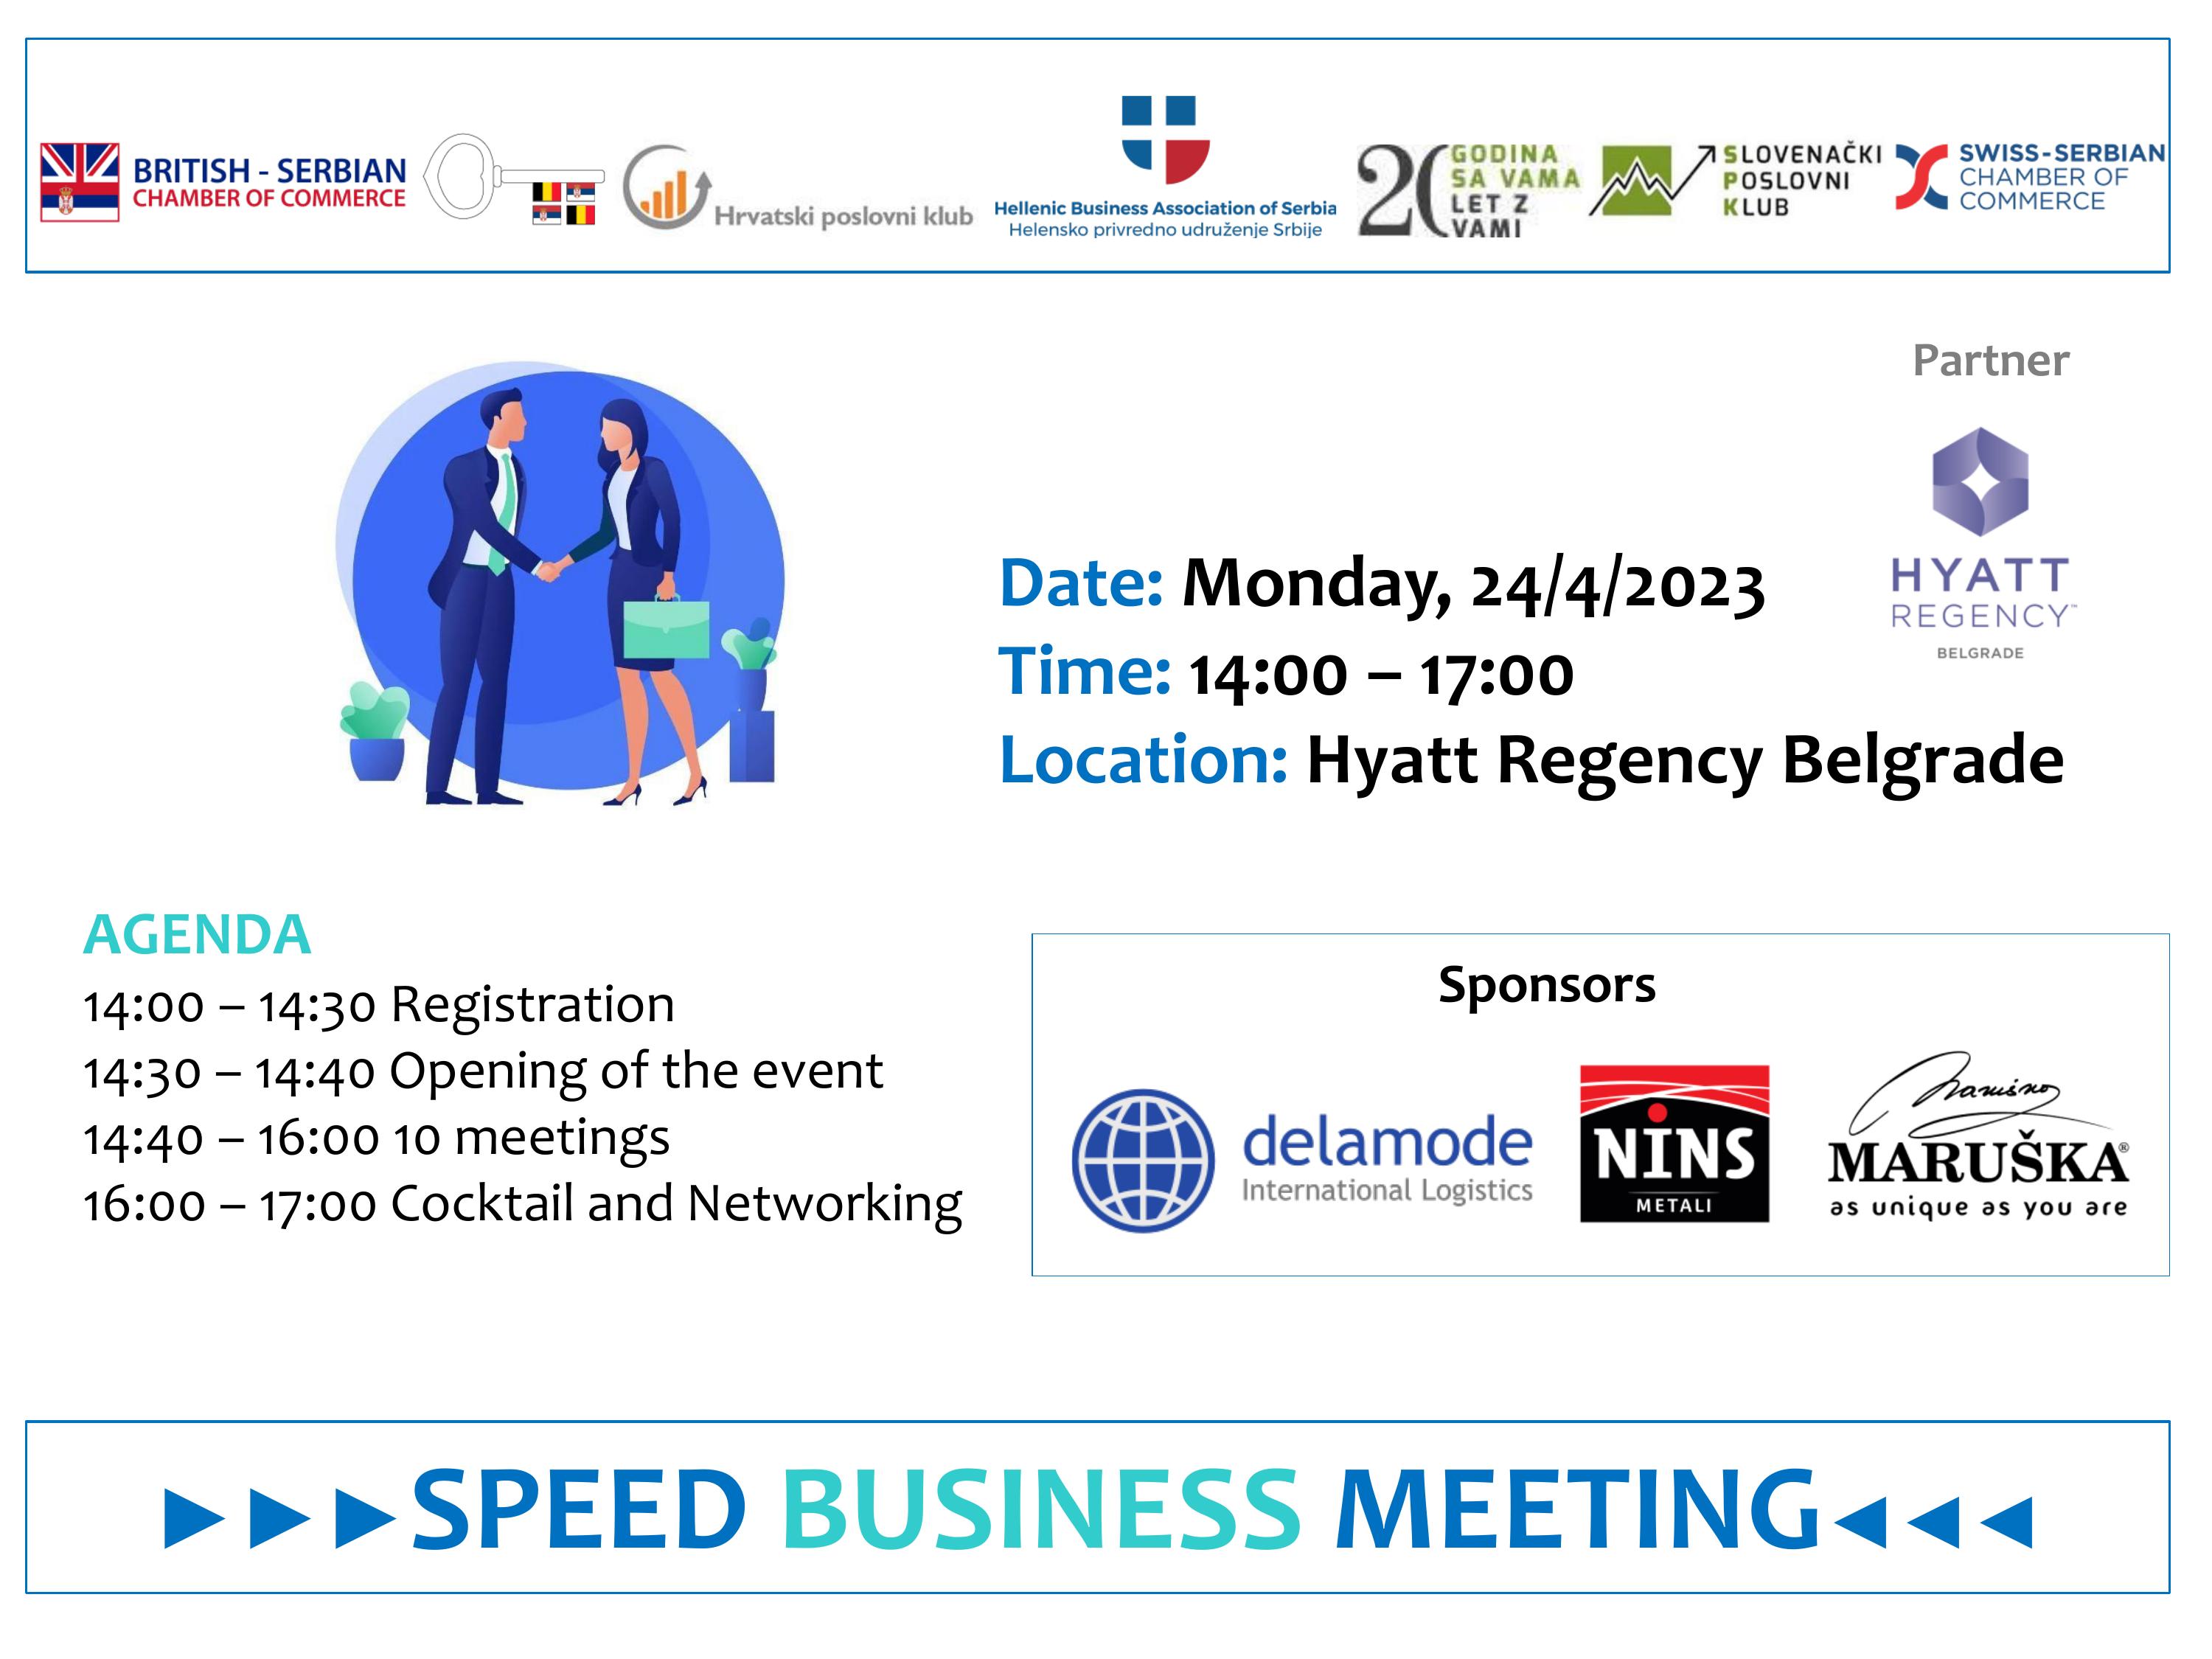 Speed Business Meeting in Belgrade 24 April